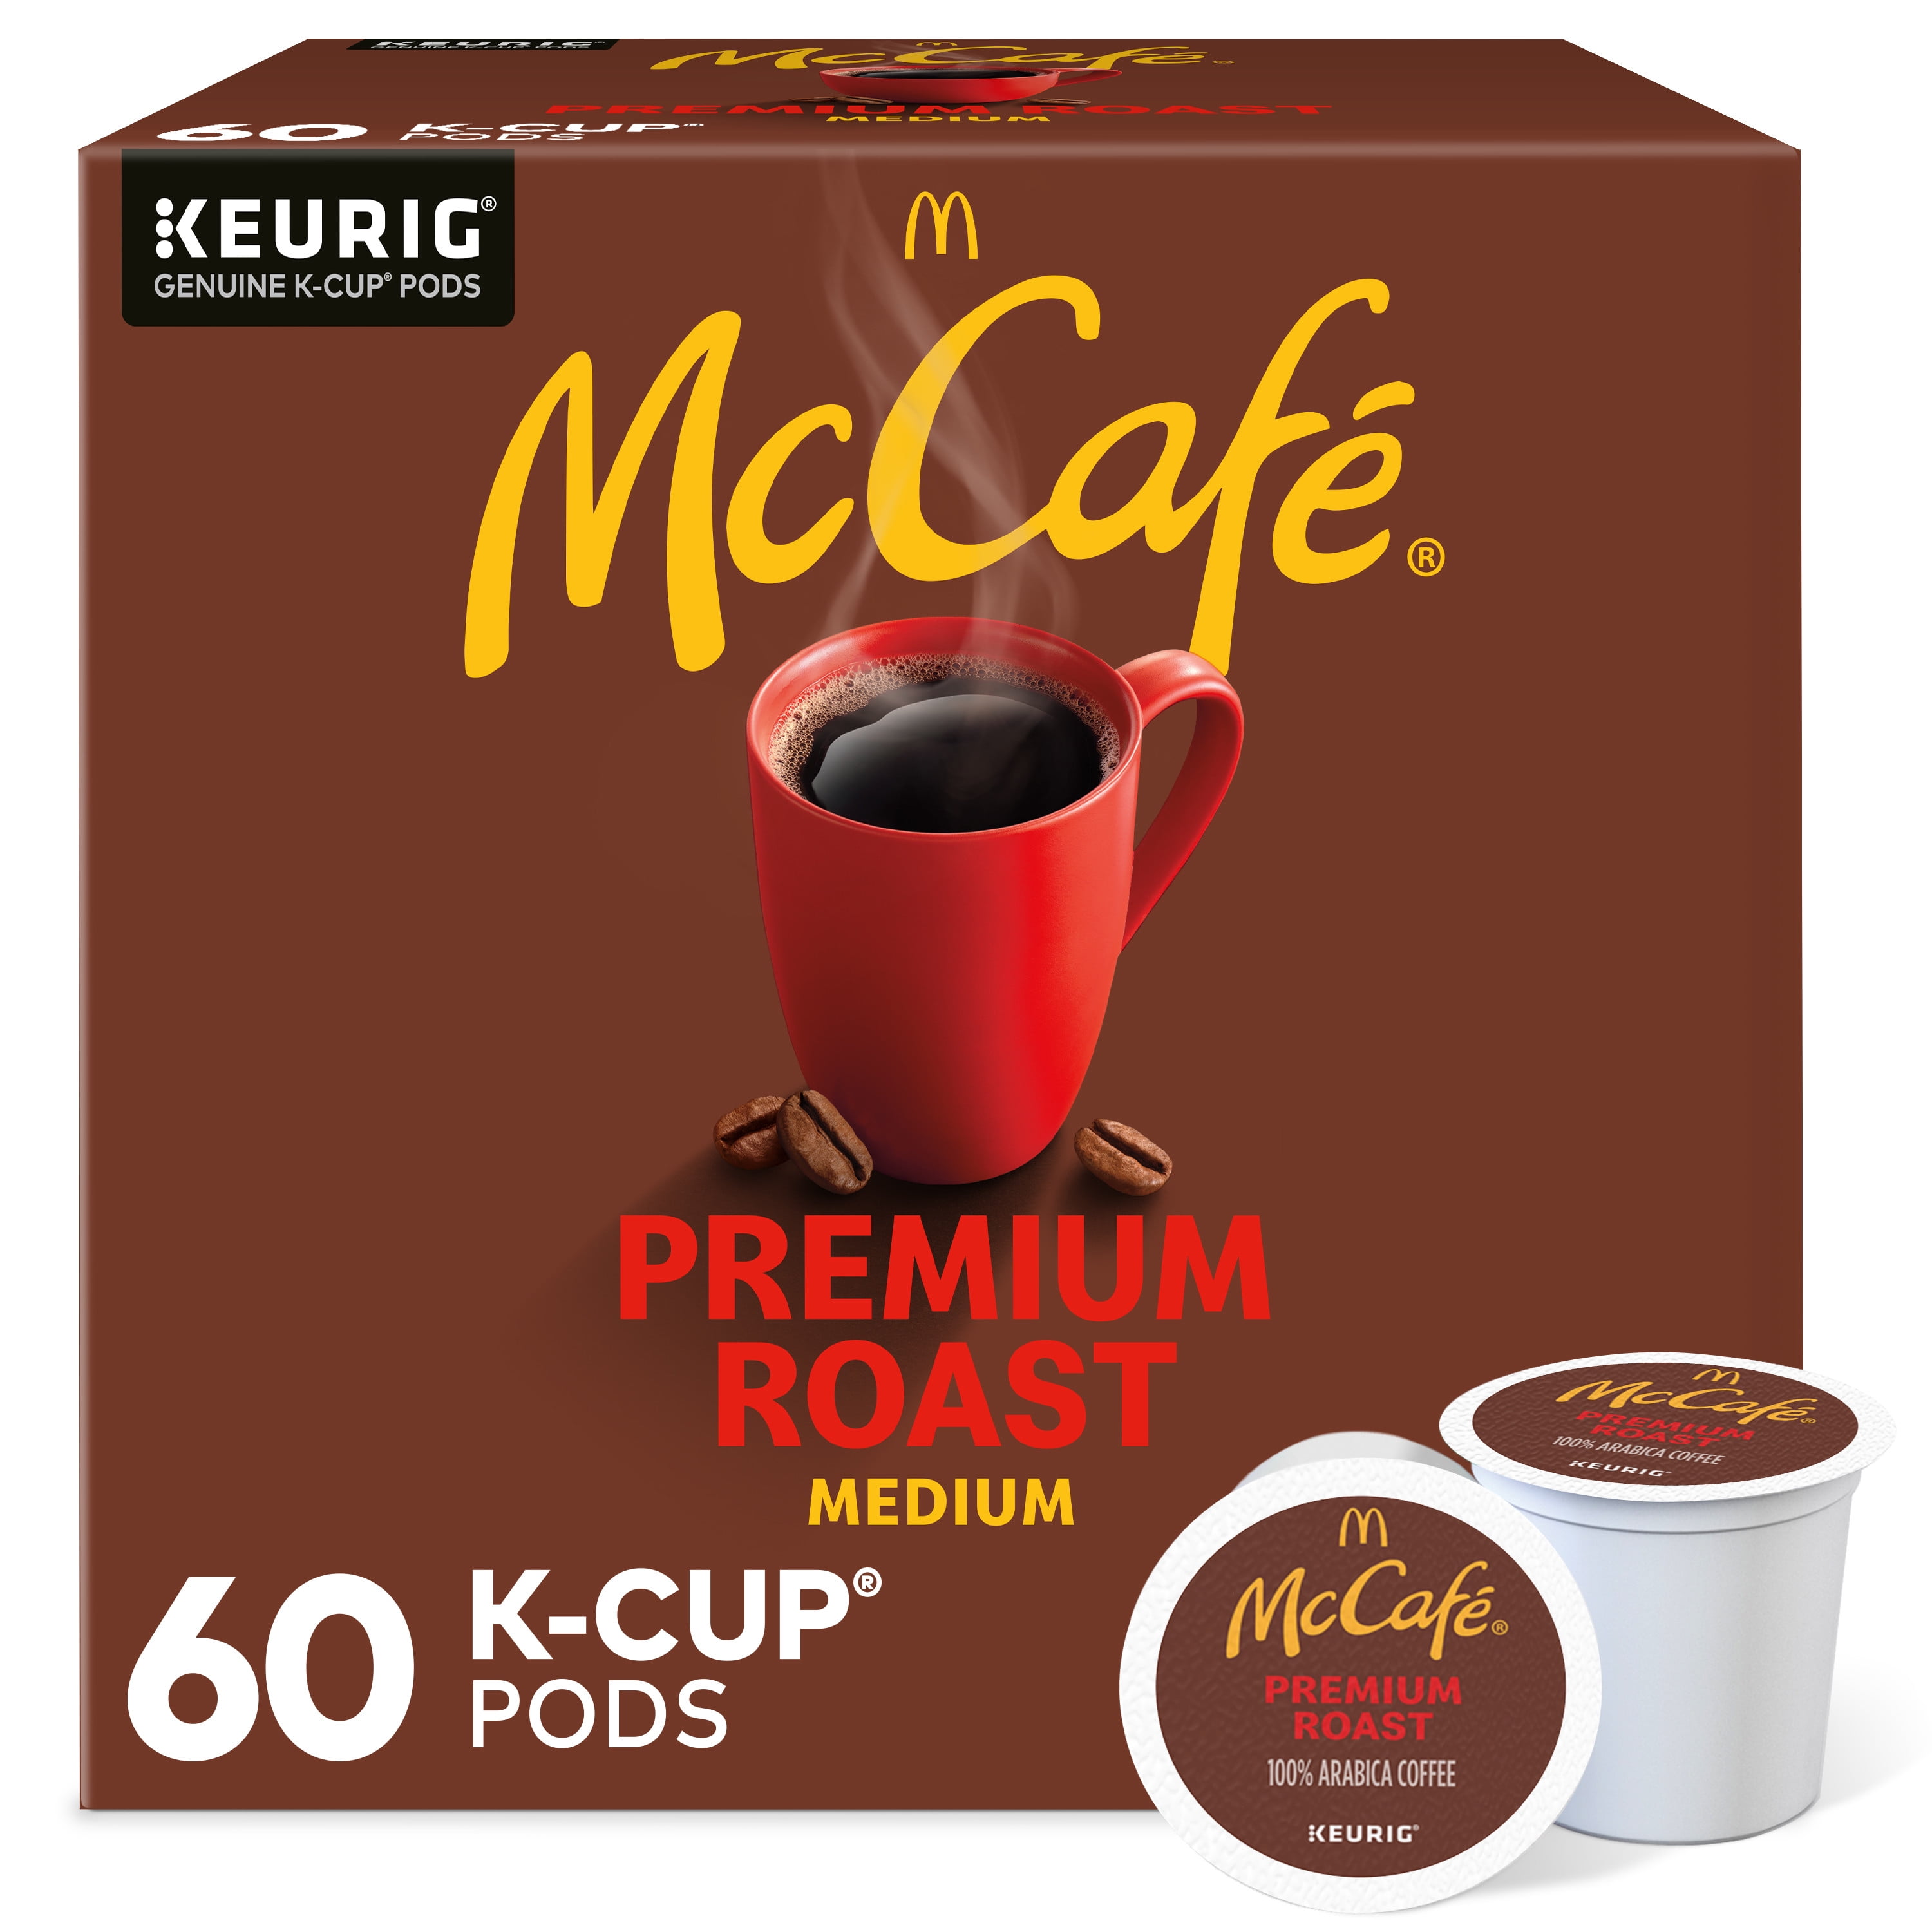 McCafe, Premium Medium Roast K-Cup Coffee Pods, 60 Count